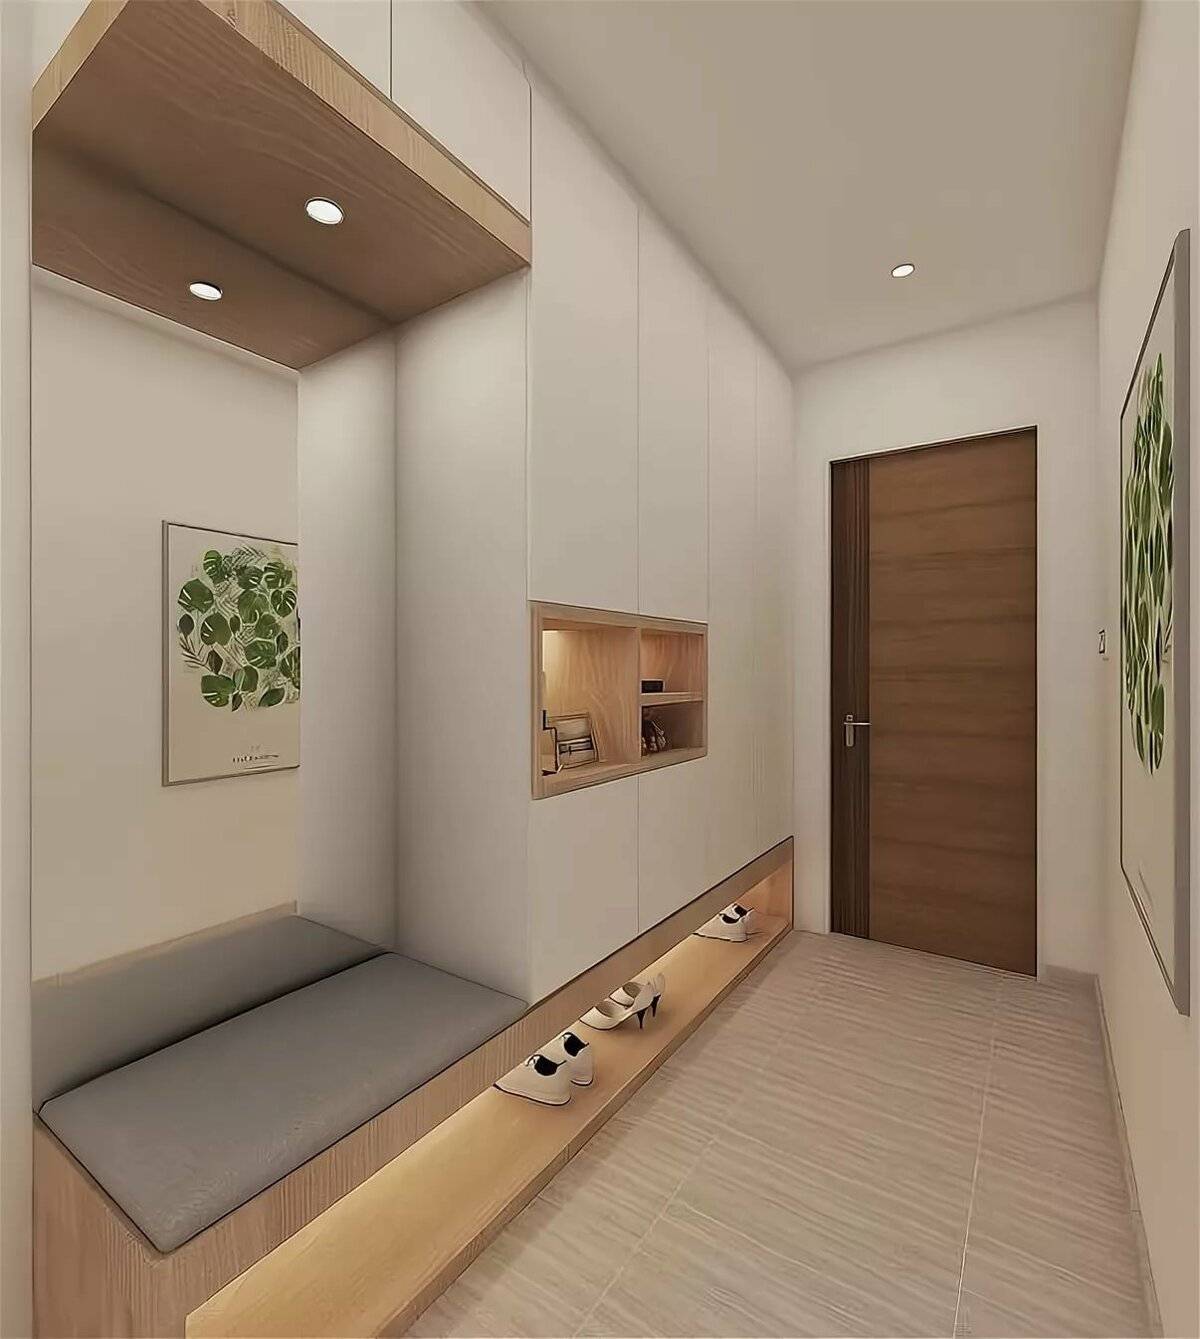 Ремонт в прихожей фото с узким коридором: квартирные идеи и варианты, икеа модульные, реальный интерьер до 30 см